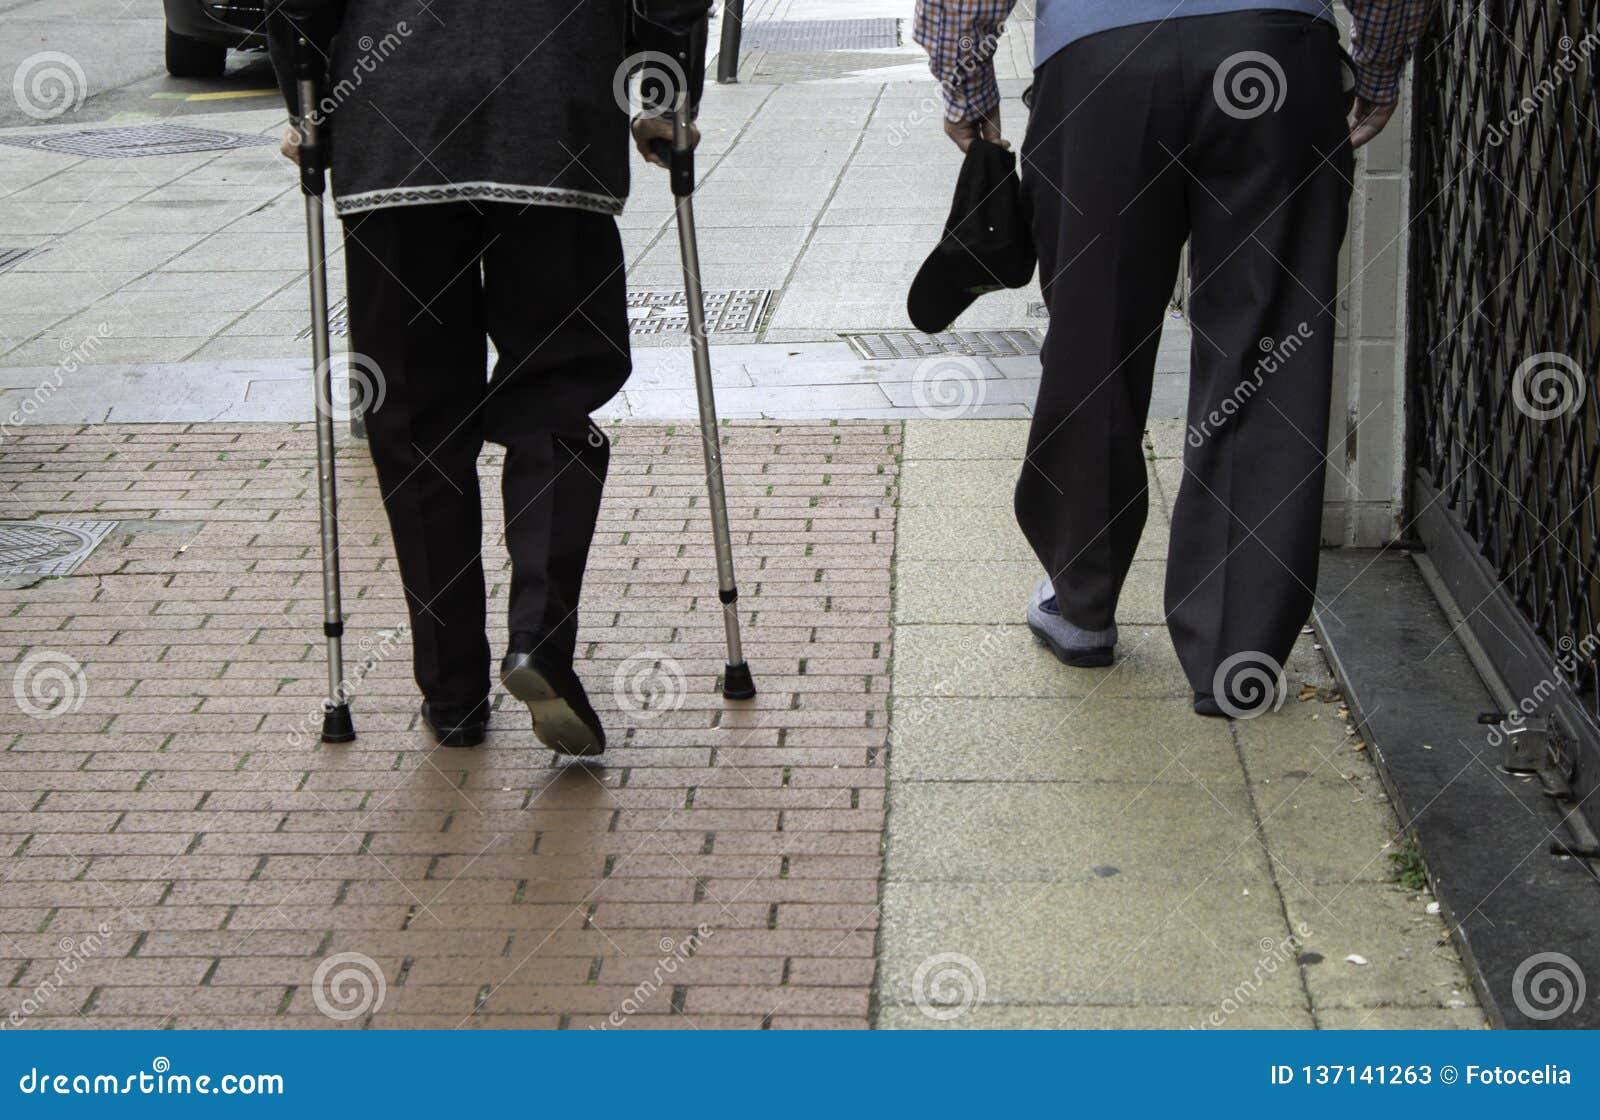 Elderly Gentlemen with Cane Stock Image - Image of gentlemen, cane ...